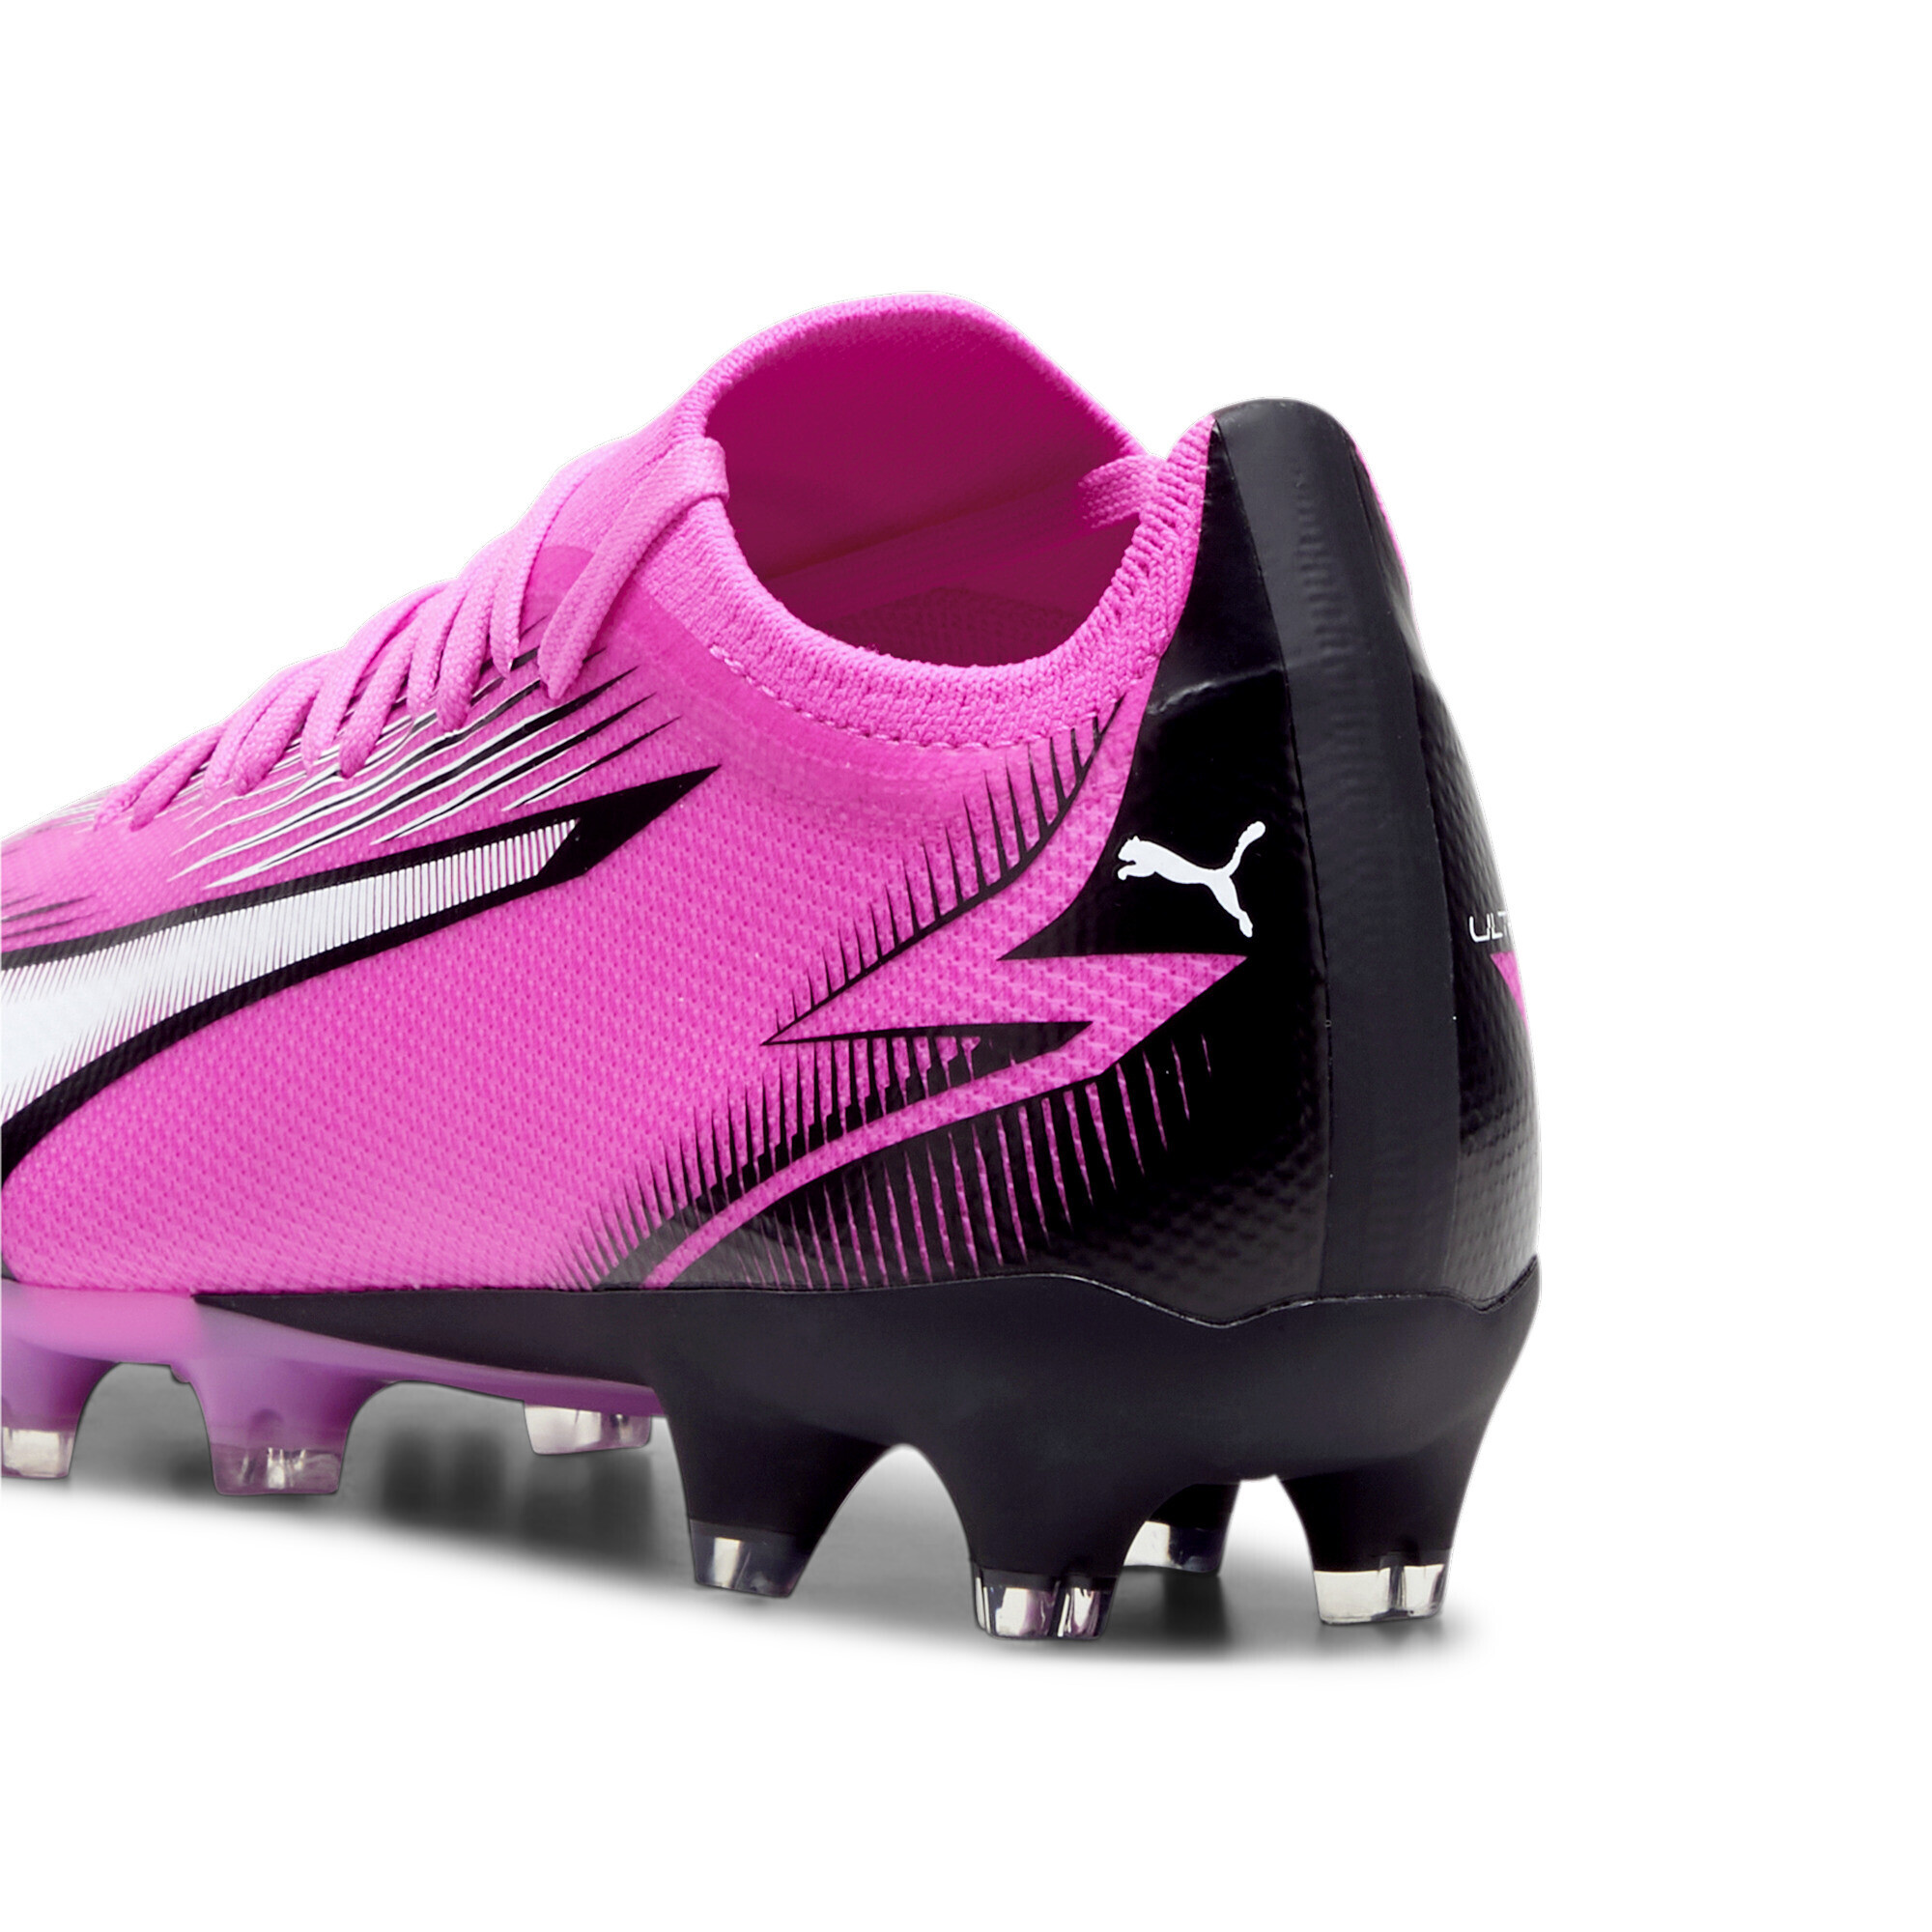 Women's PUMA ULTRA MATCH FG/AG Football Boots In Pink, Size EU 40.5